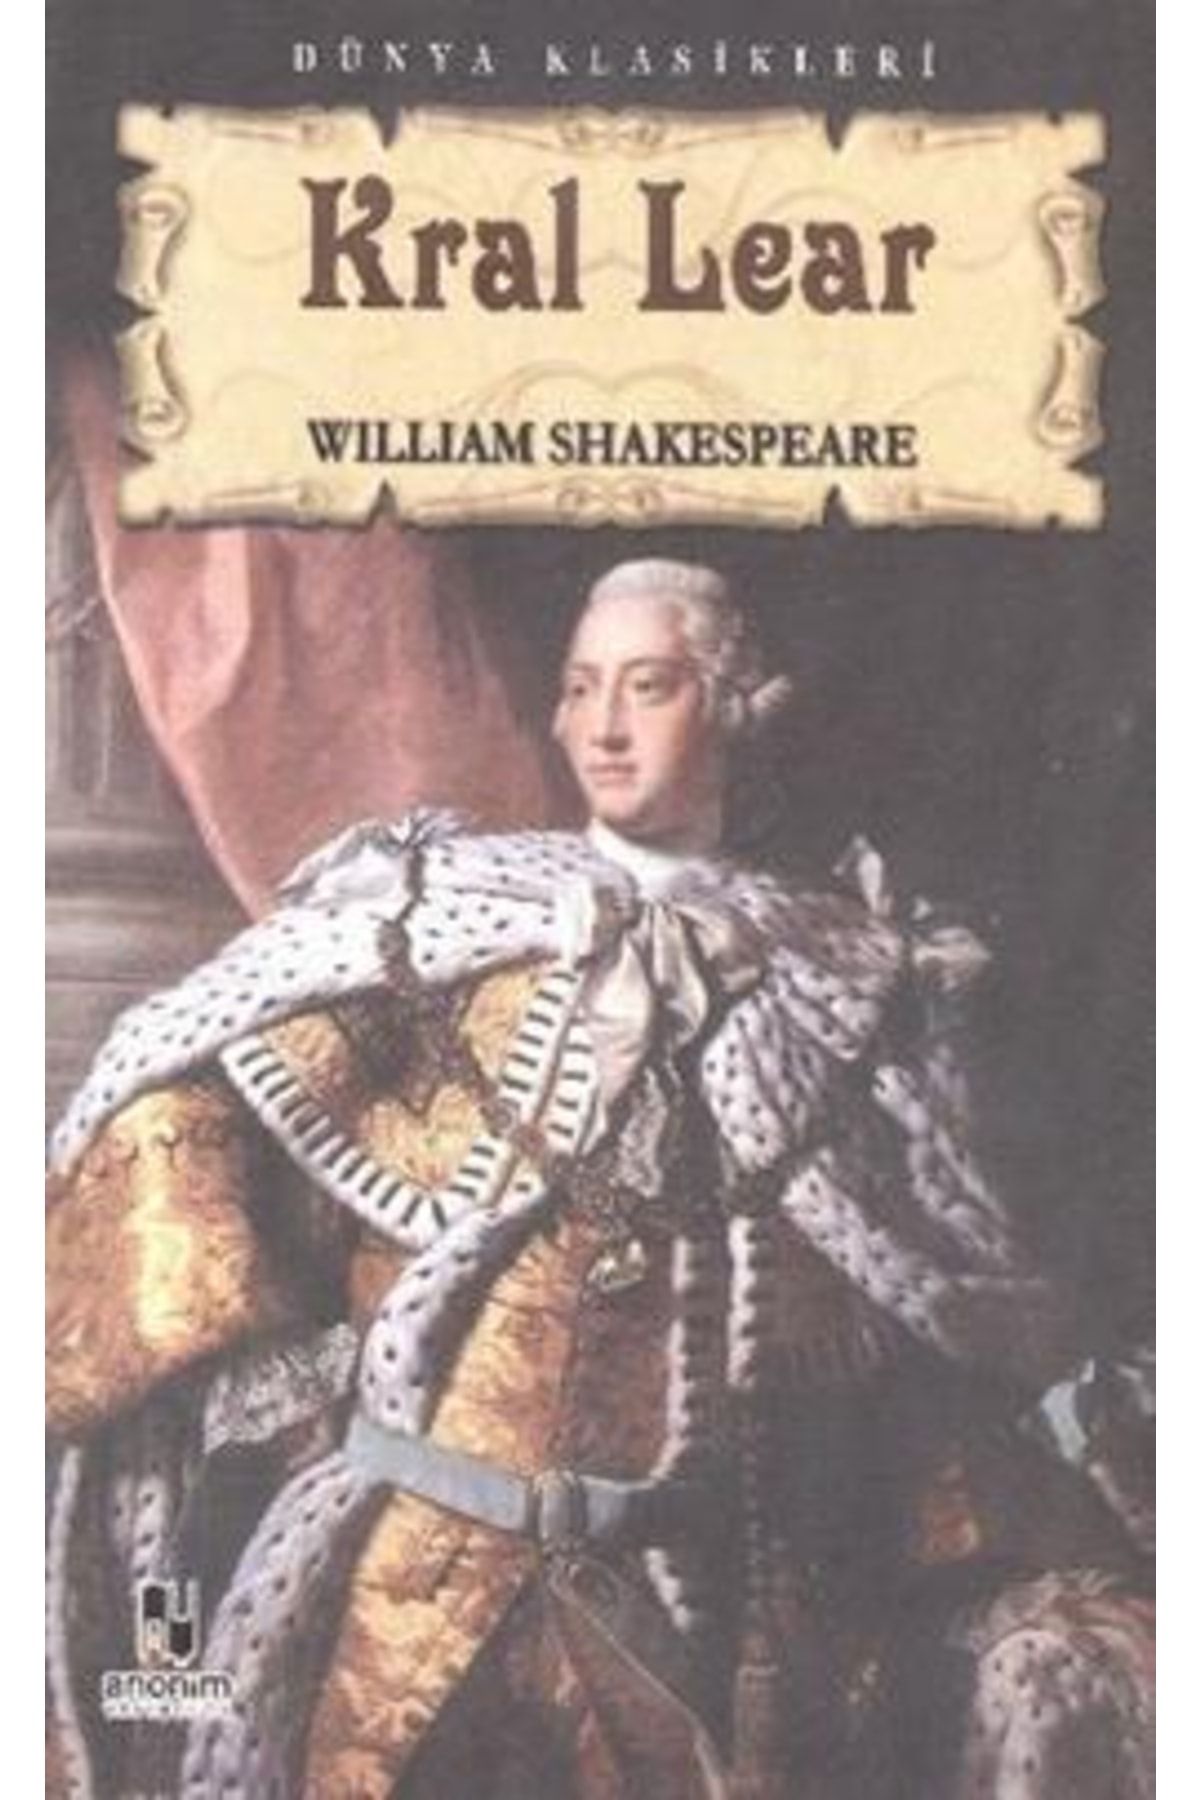 Kitap Zamanı Yayınları Kral Lear, William Shakespeare, , Kral Lear Kitabı, 189 Sayfa